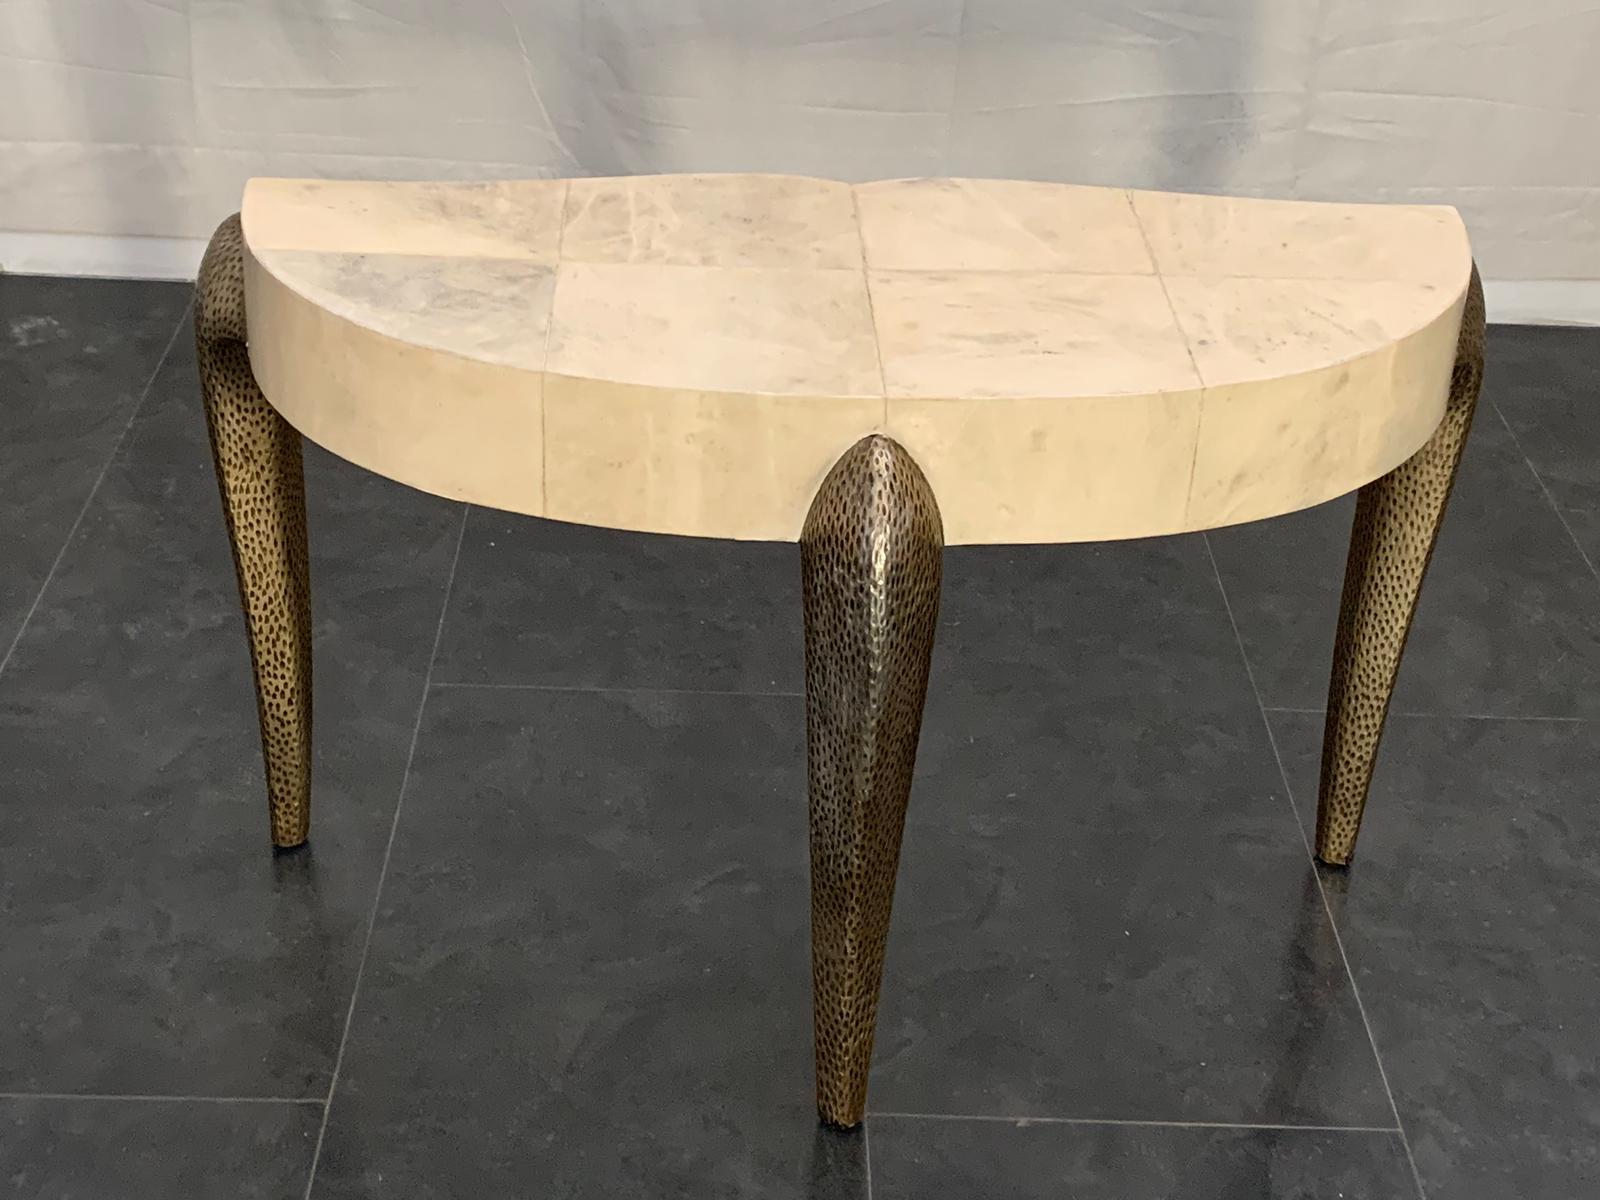 Elegantes Schreibtisch Tisch, mit gebogenen Beinen und fertig baccellate Blattsilber patiniert, ist der Körper in Pergament bedeckt. Italien, 90er Jahre.
Die Verpackung mit Luftpolsterfolie und Kartonagen ist inbegriffen. Wenn die hölzerne